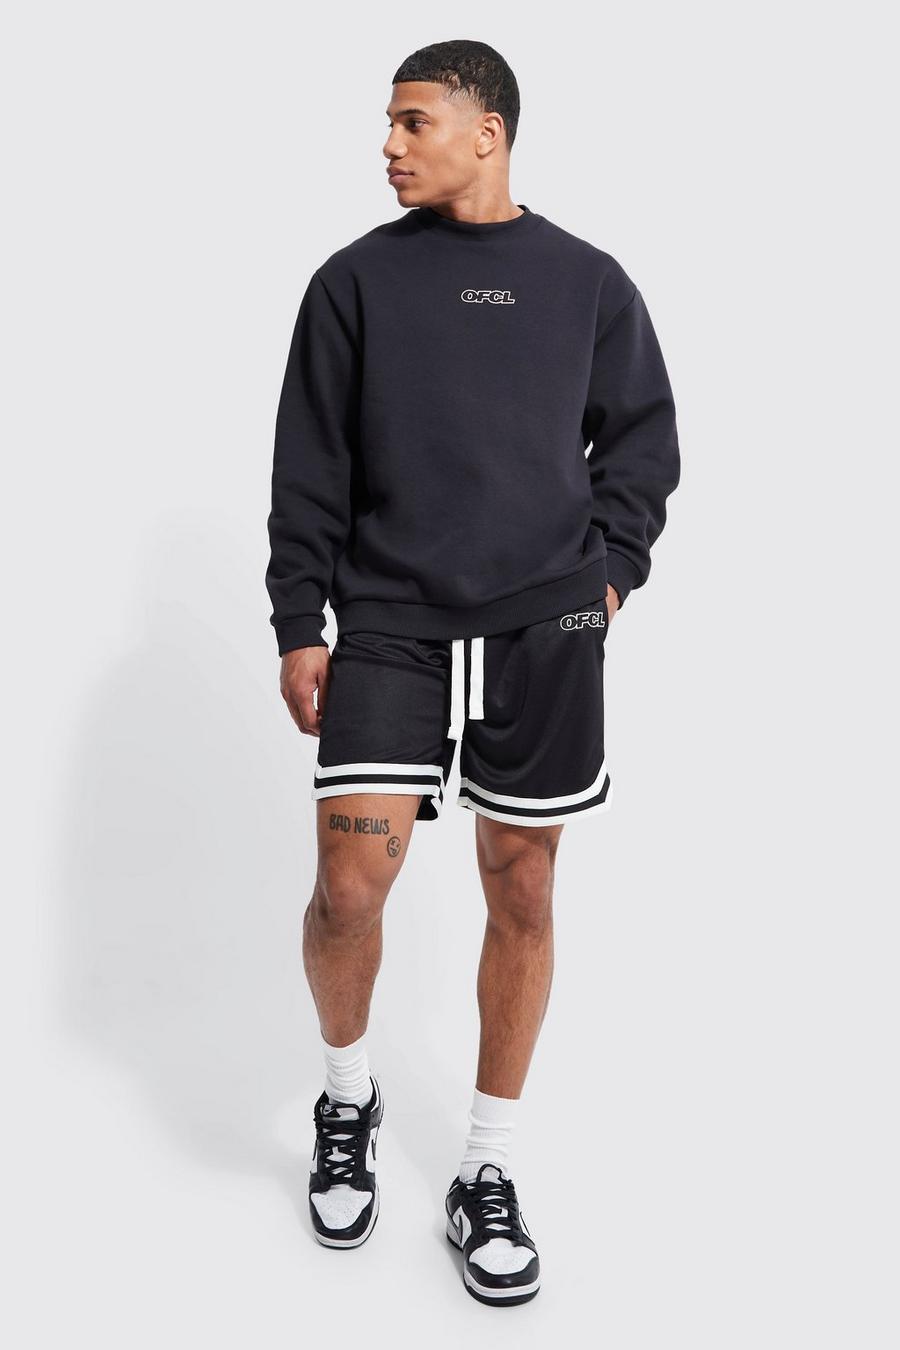 Black Oversized Ofcl Sweatshirt Mesh Short Tracksuit